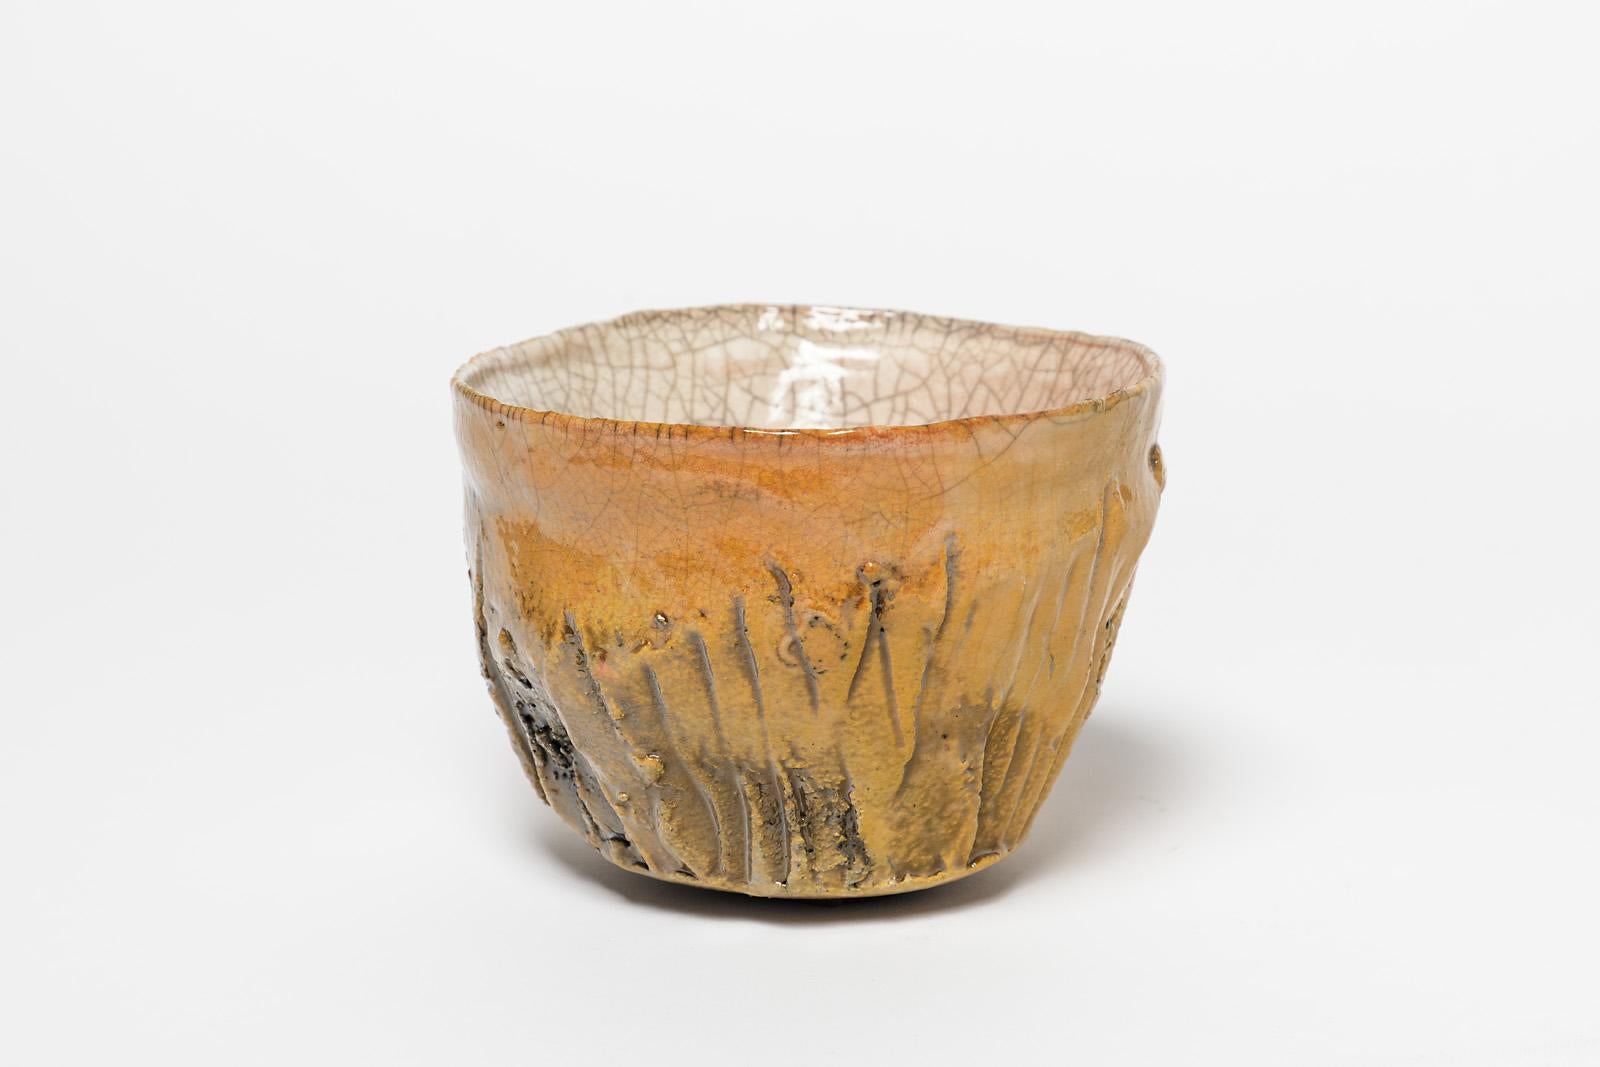 Un bol ou une tasse en céramique de Claude Champy.
Conditions d'origine parfaites.
Signé sous la base 